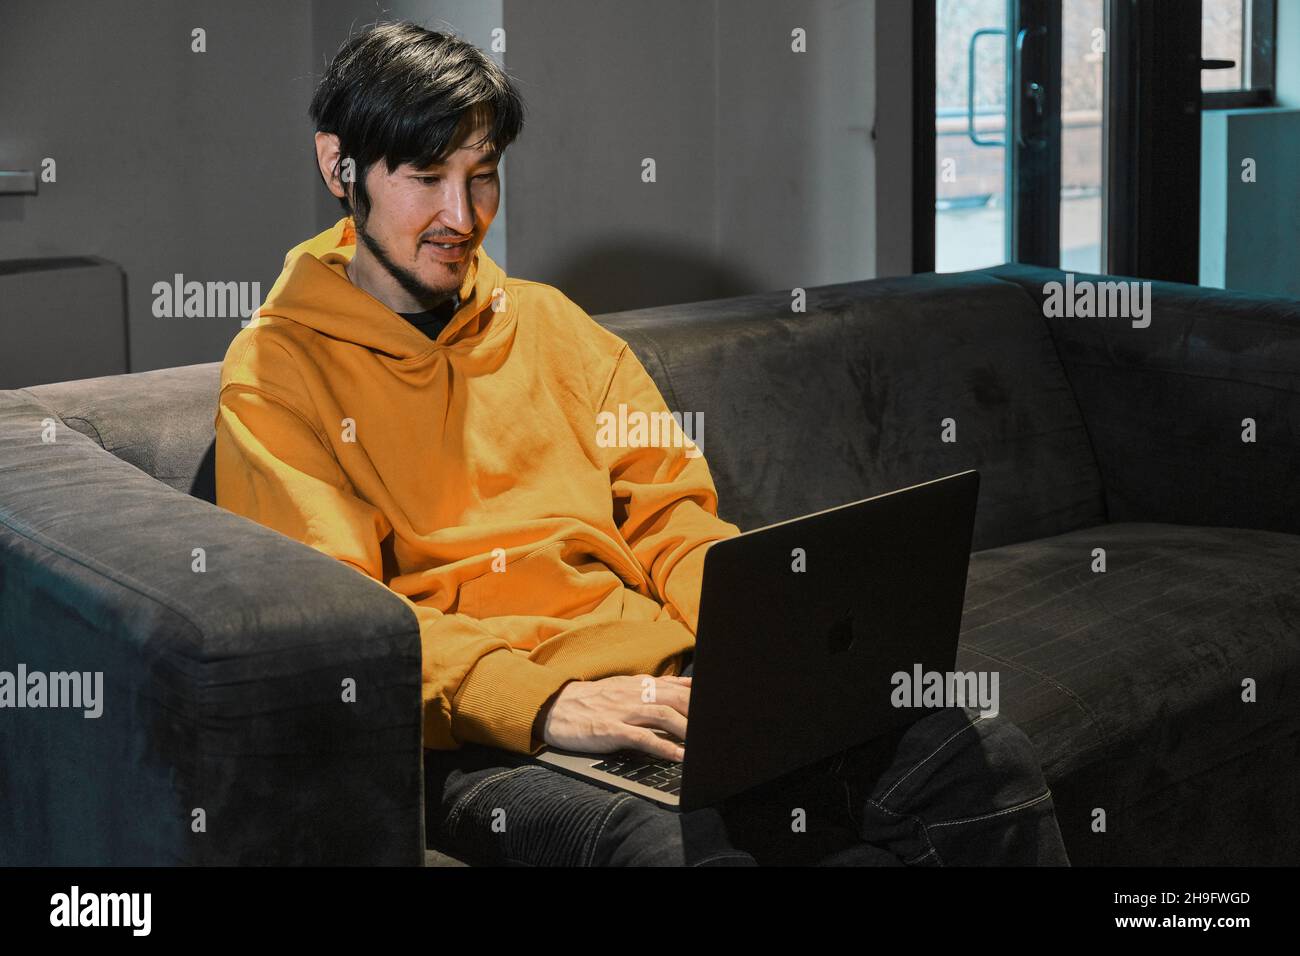 Ein Asiat sitzt in einem kleinen Büro auf dem Sofa und kommuniziert über einen Laptop über eine Videoverbindung. Das Konzept von Kleinunternehmen und Online-Kommunikation. Stockfoto